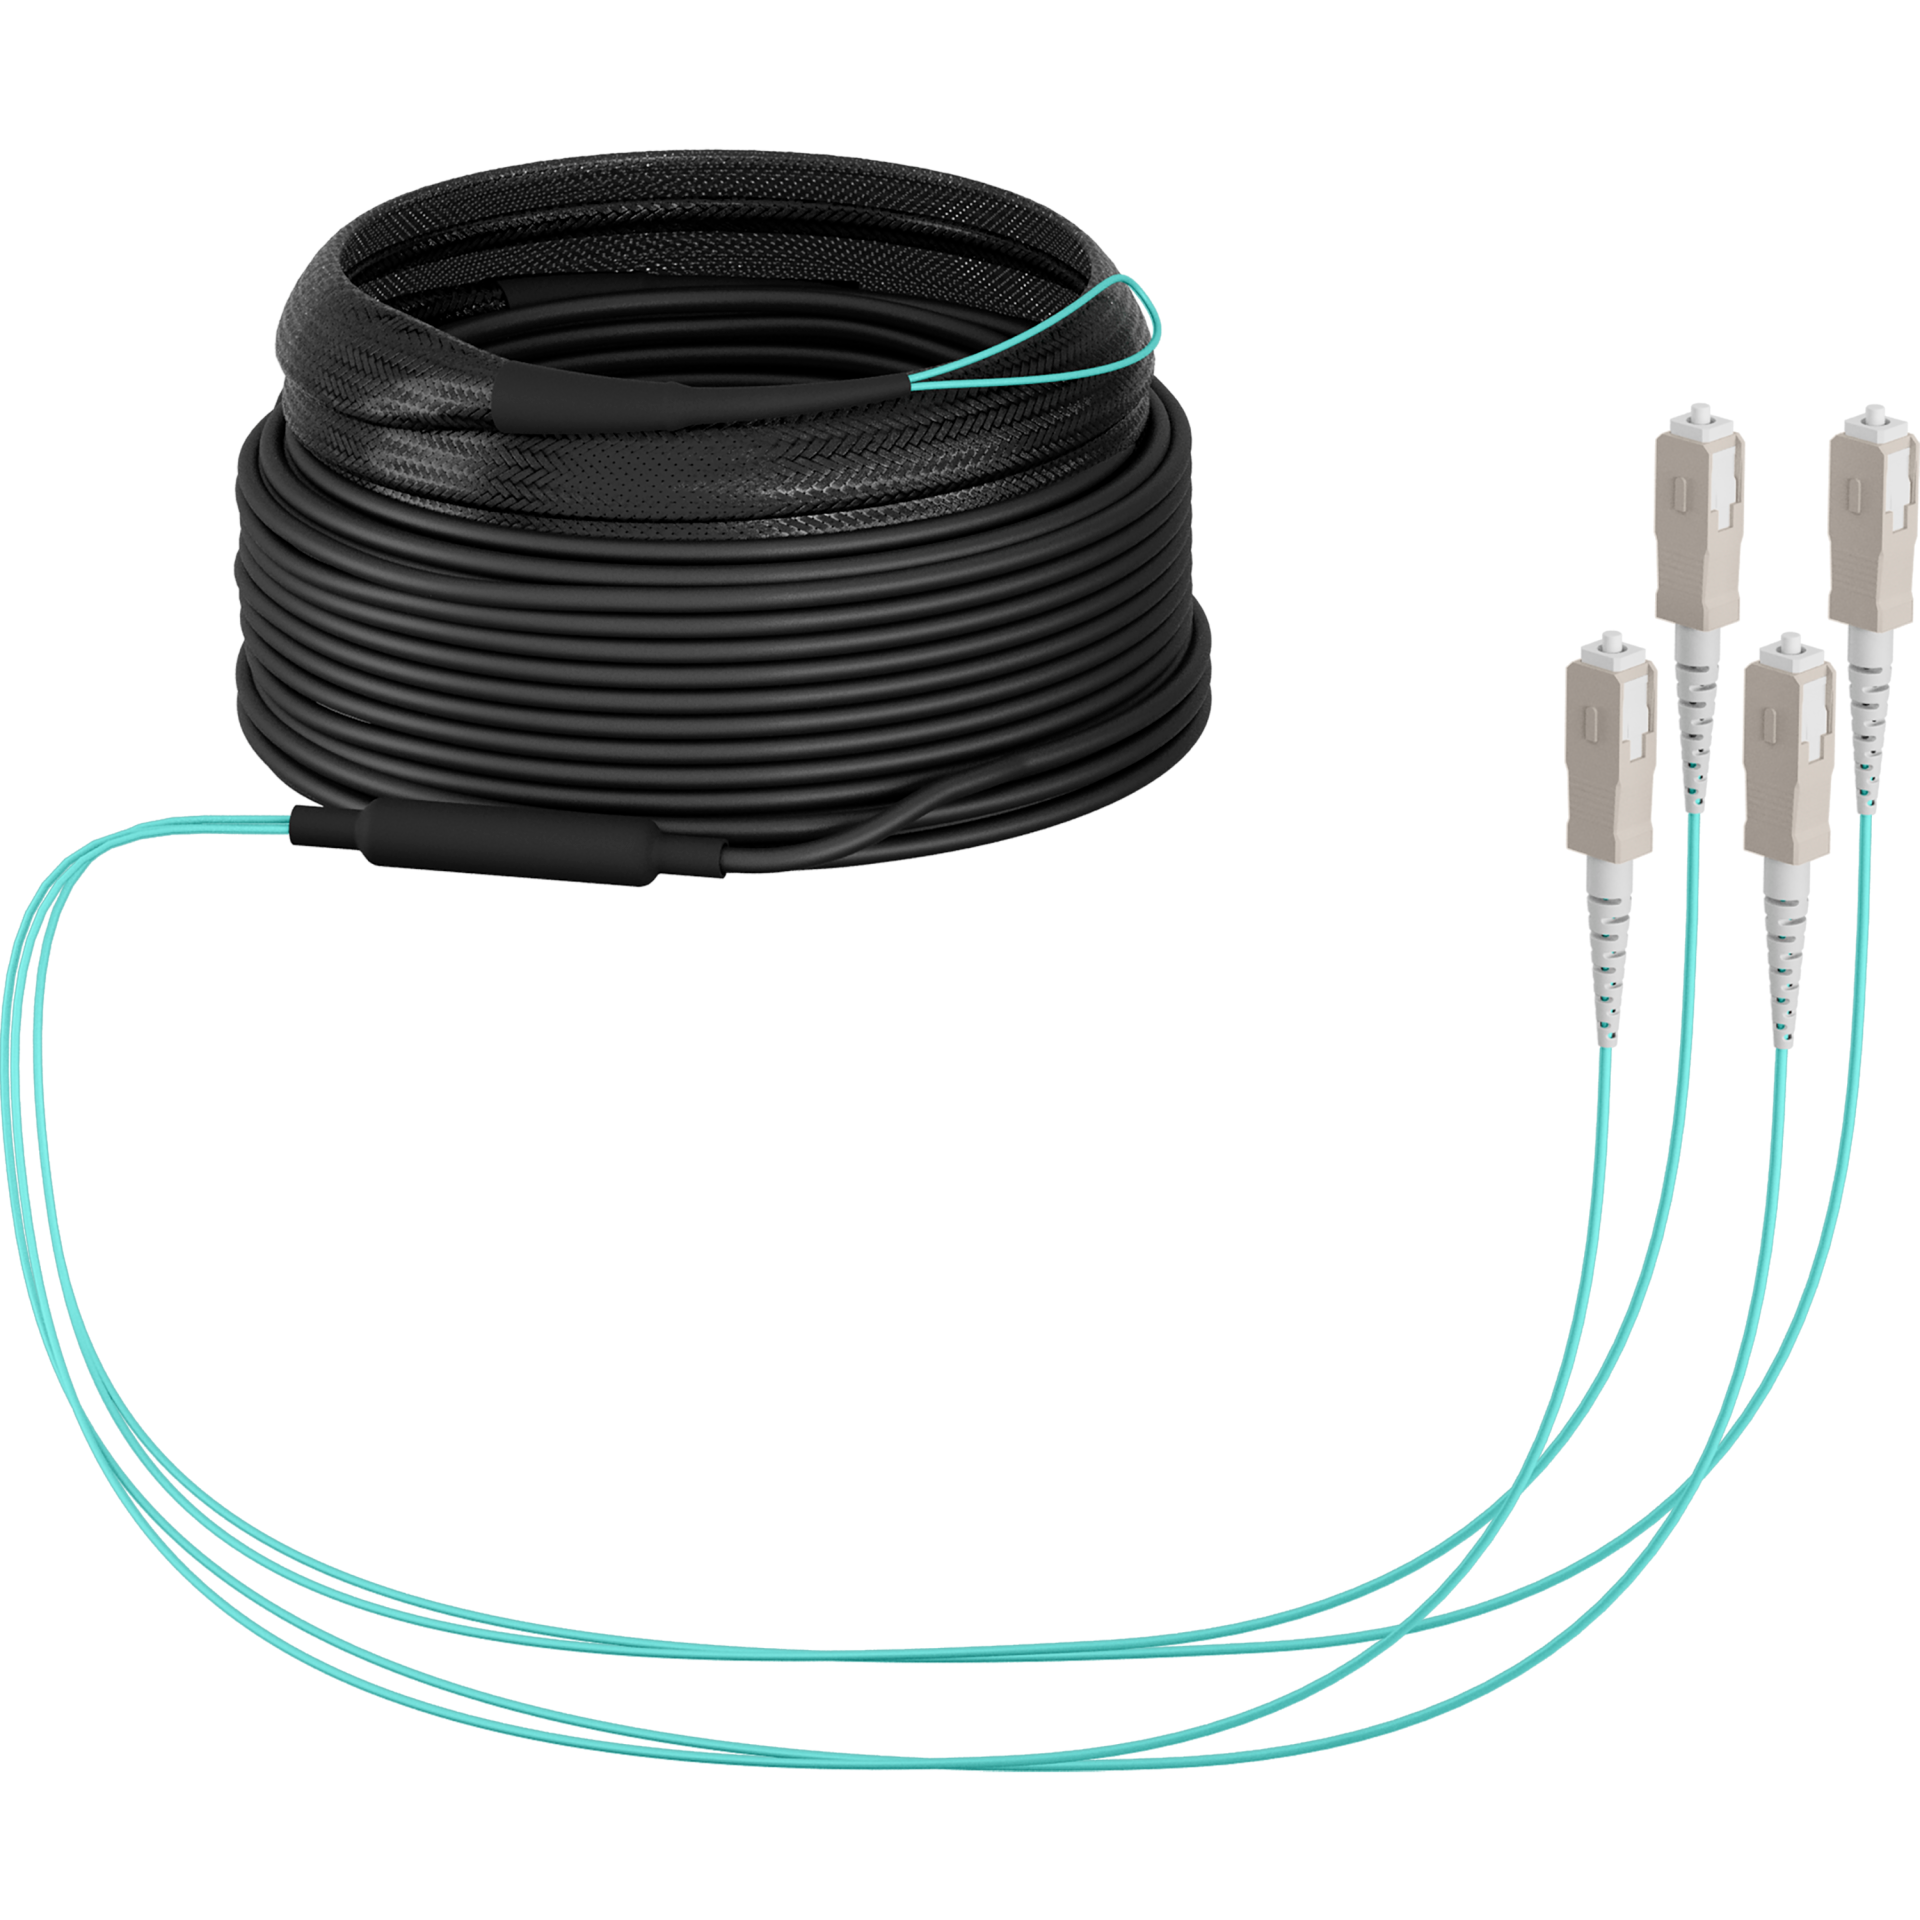 Trunk cable U-DQ(ZN)BH OM3 4G (1x4) SC-SC,10m Dca LSZH